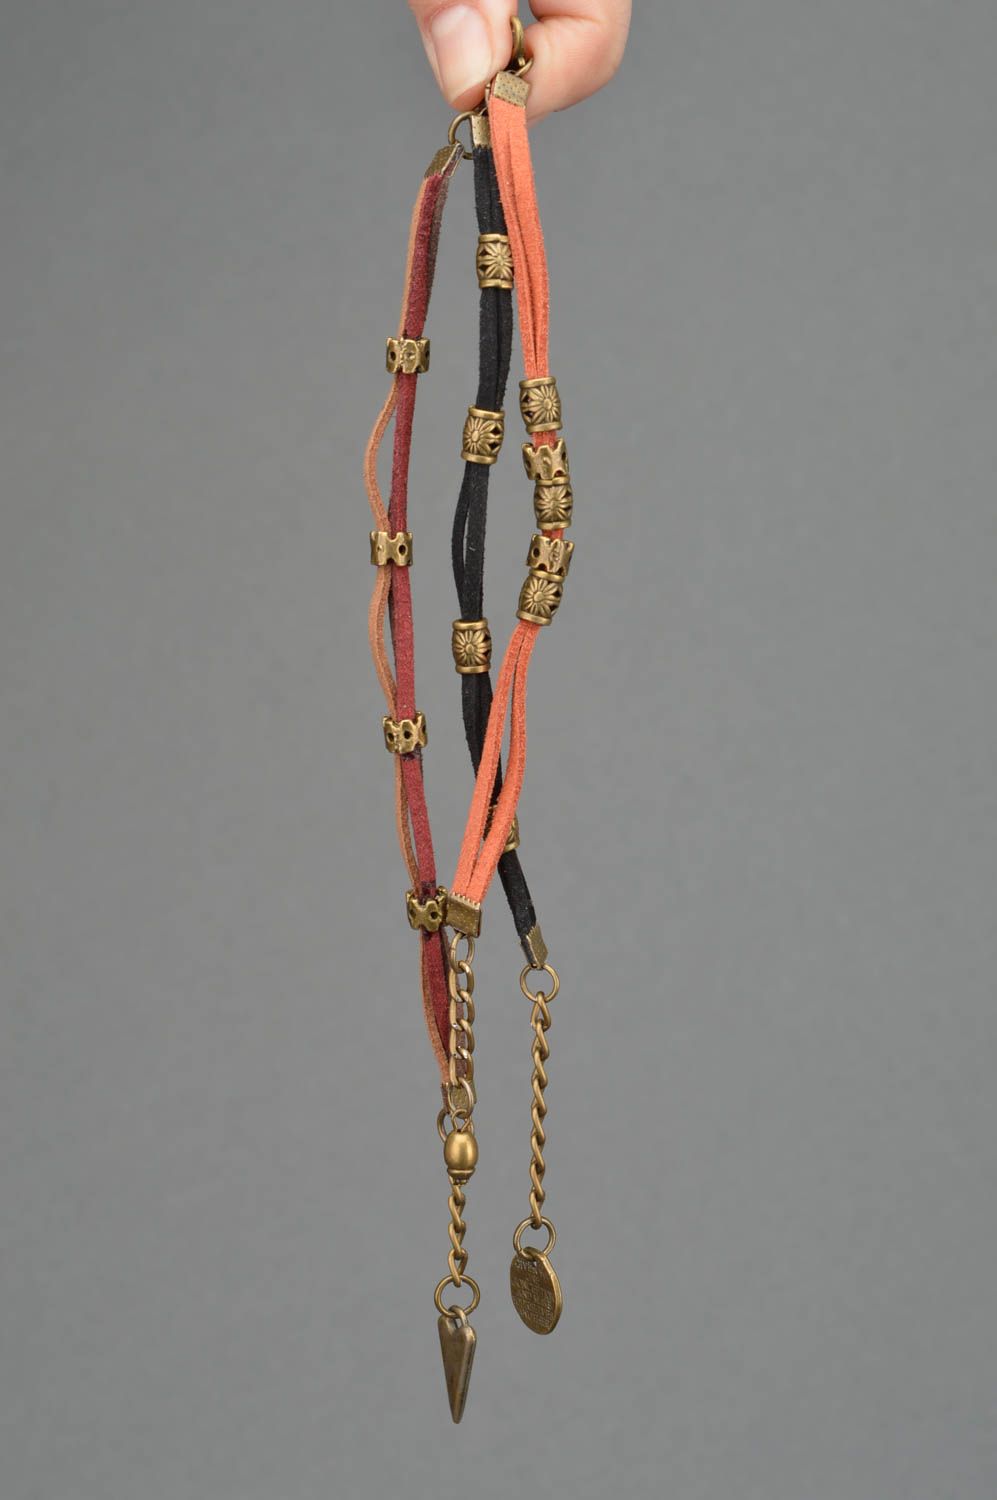 Комплект браслетов из замшевых шнурков с вставками 3 штуки разных цветов фото 3